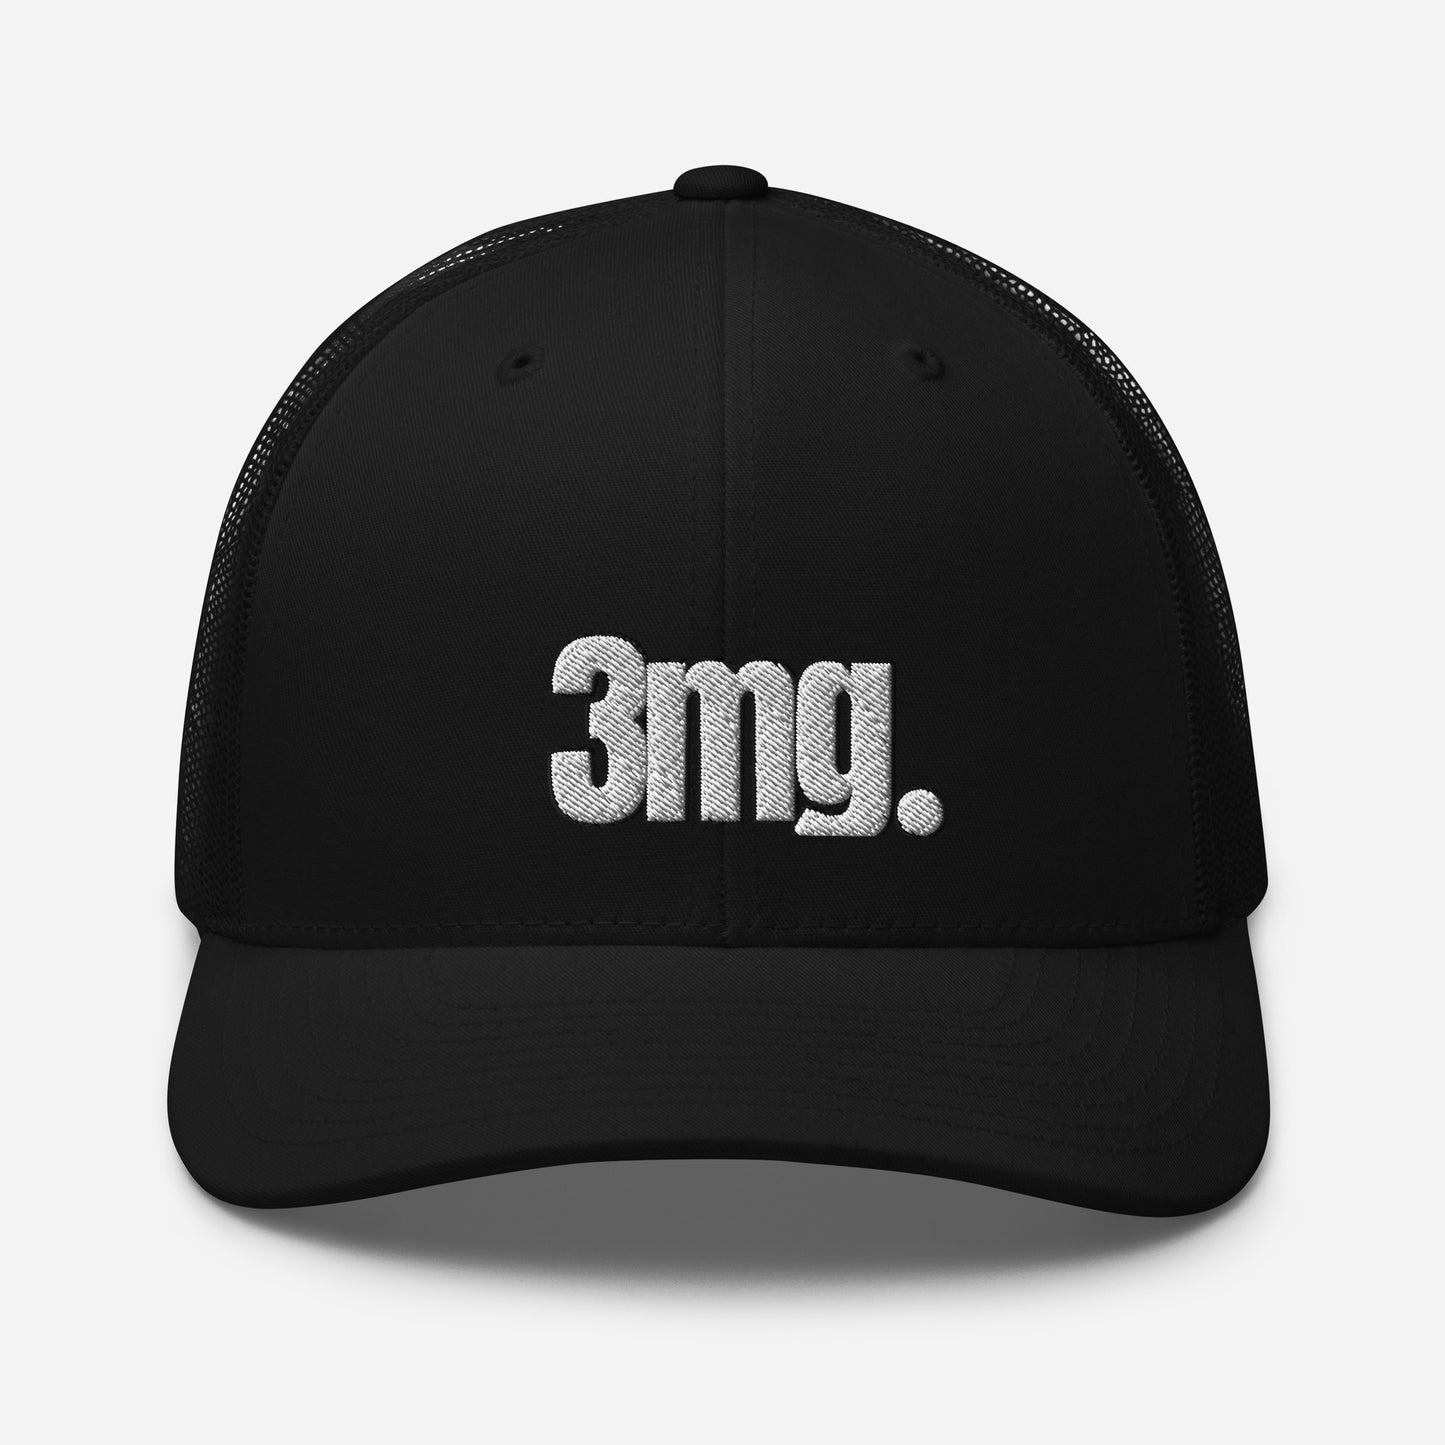 3mg DAD CAP